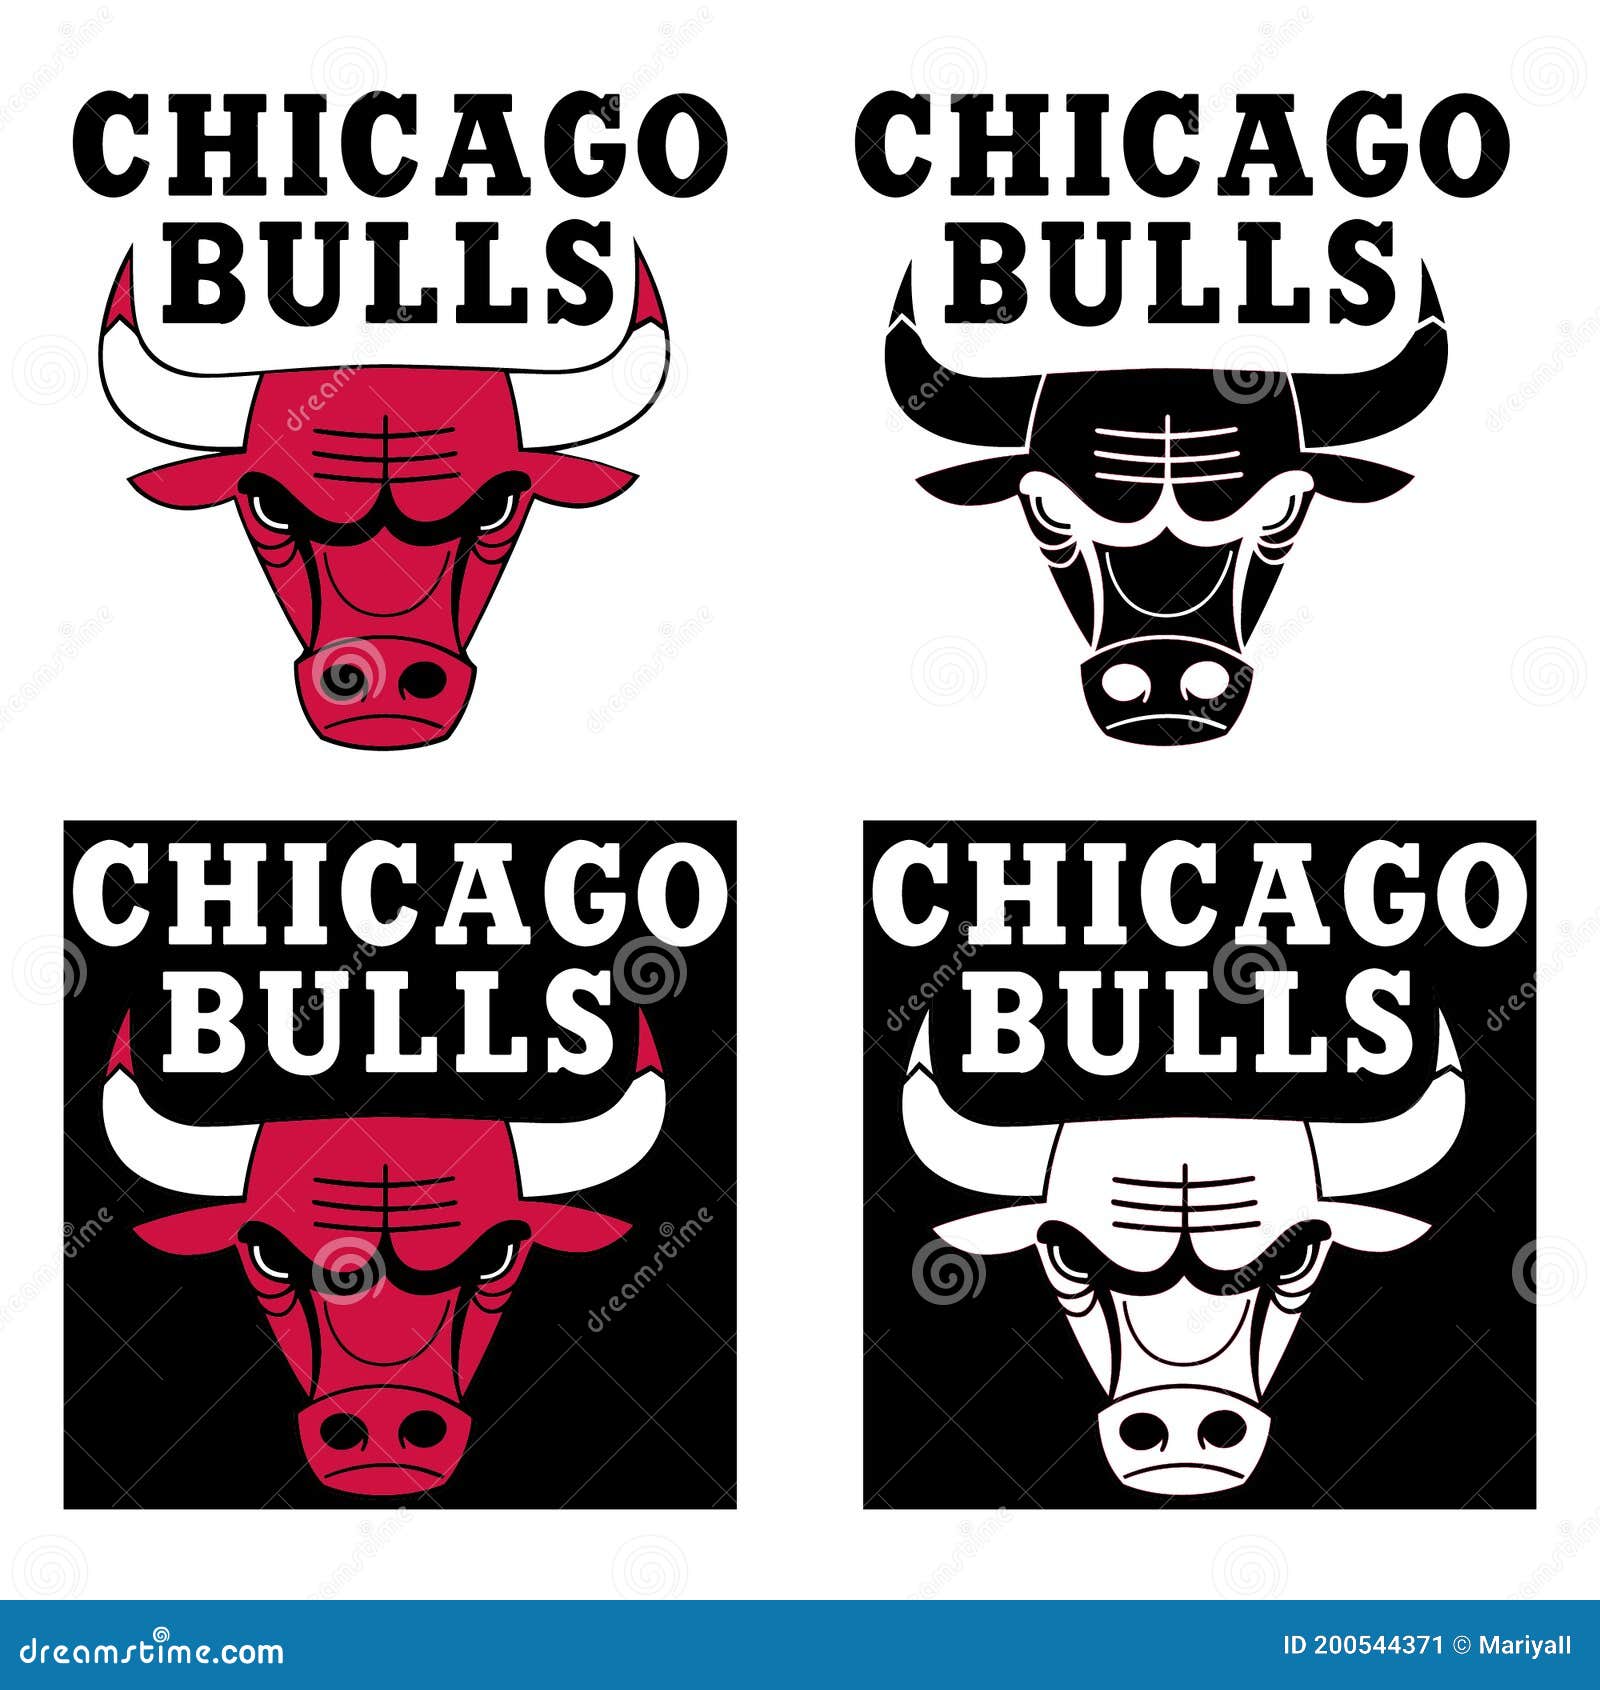 芝加哥公牛队壁纸和背景,高清图片,壁纸 - 天下桌面